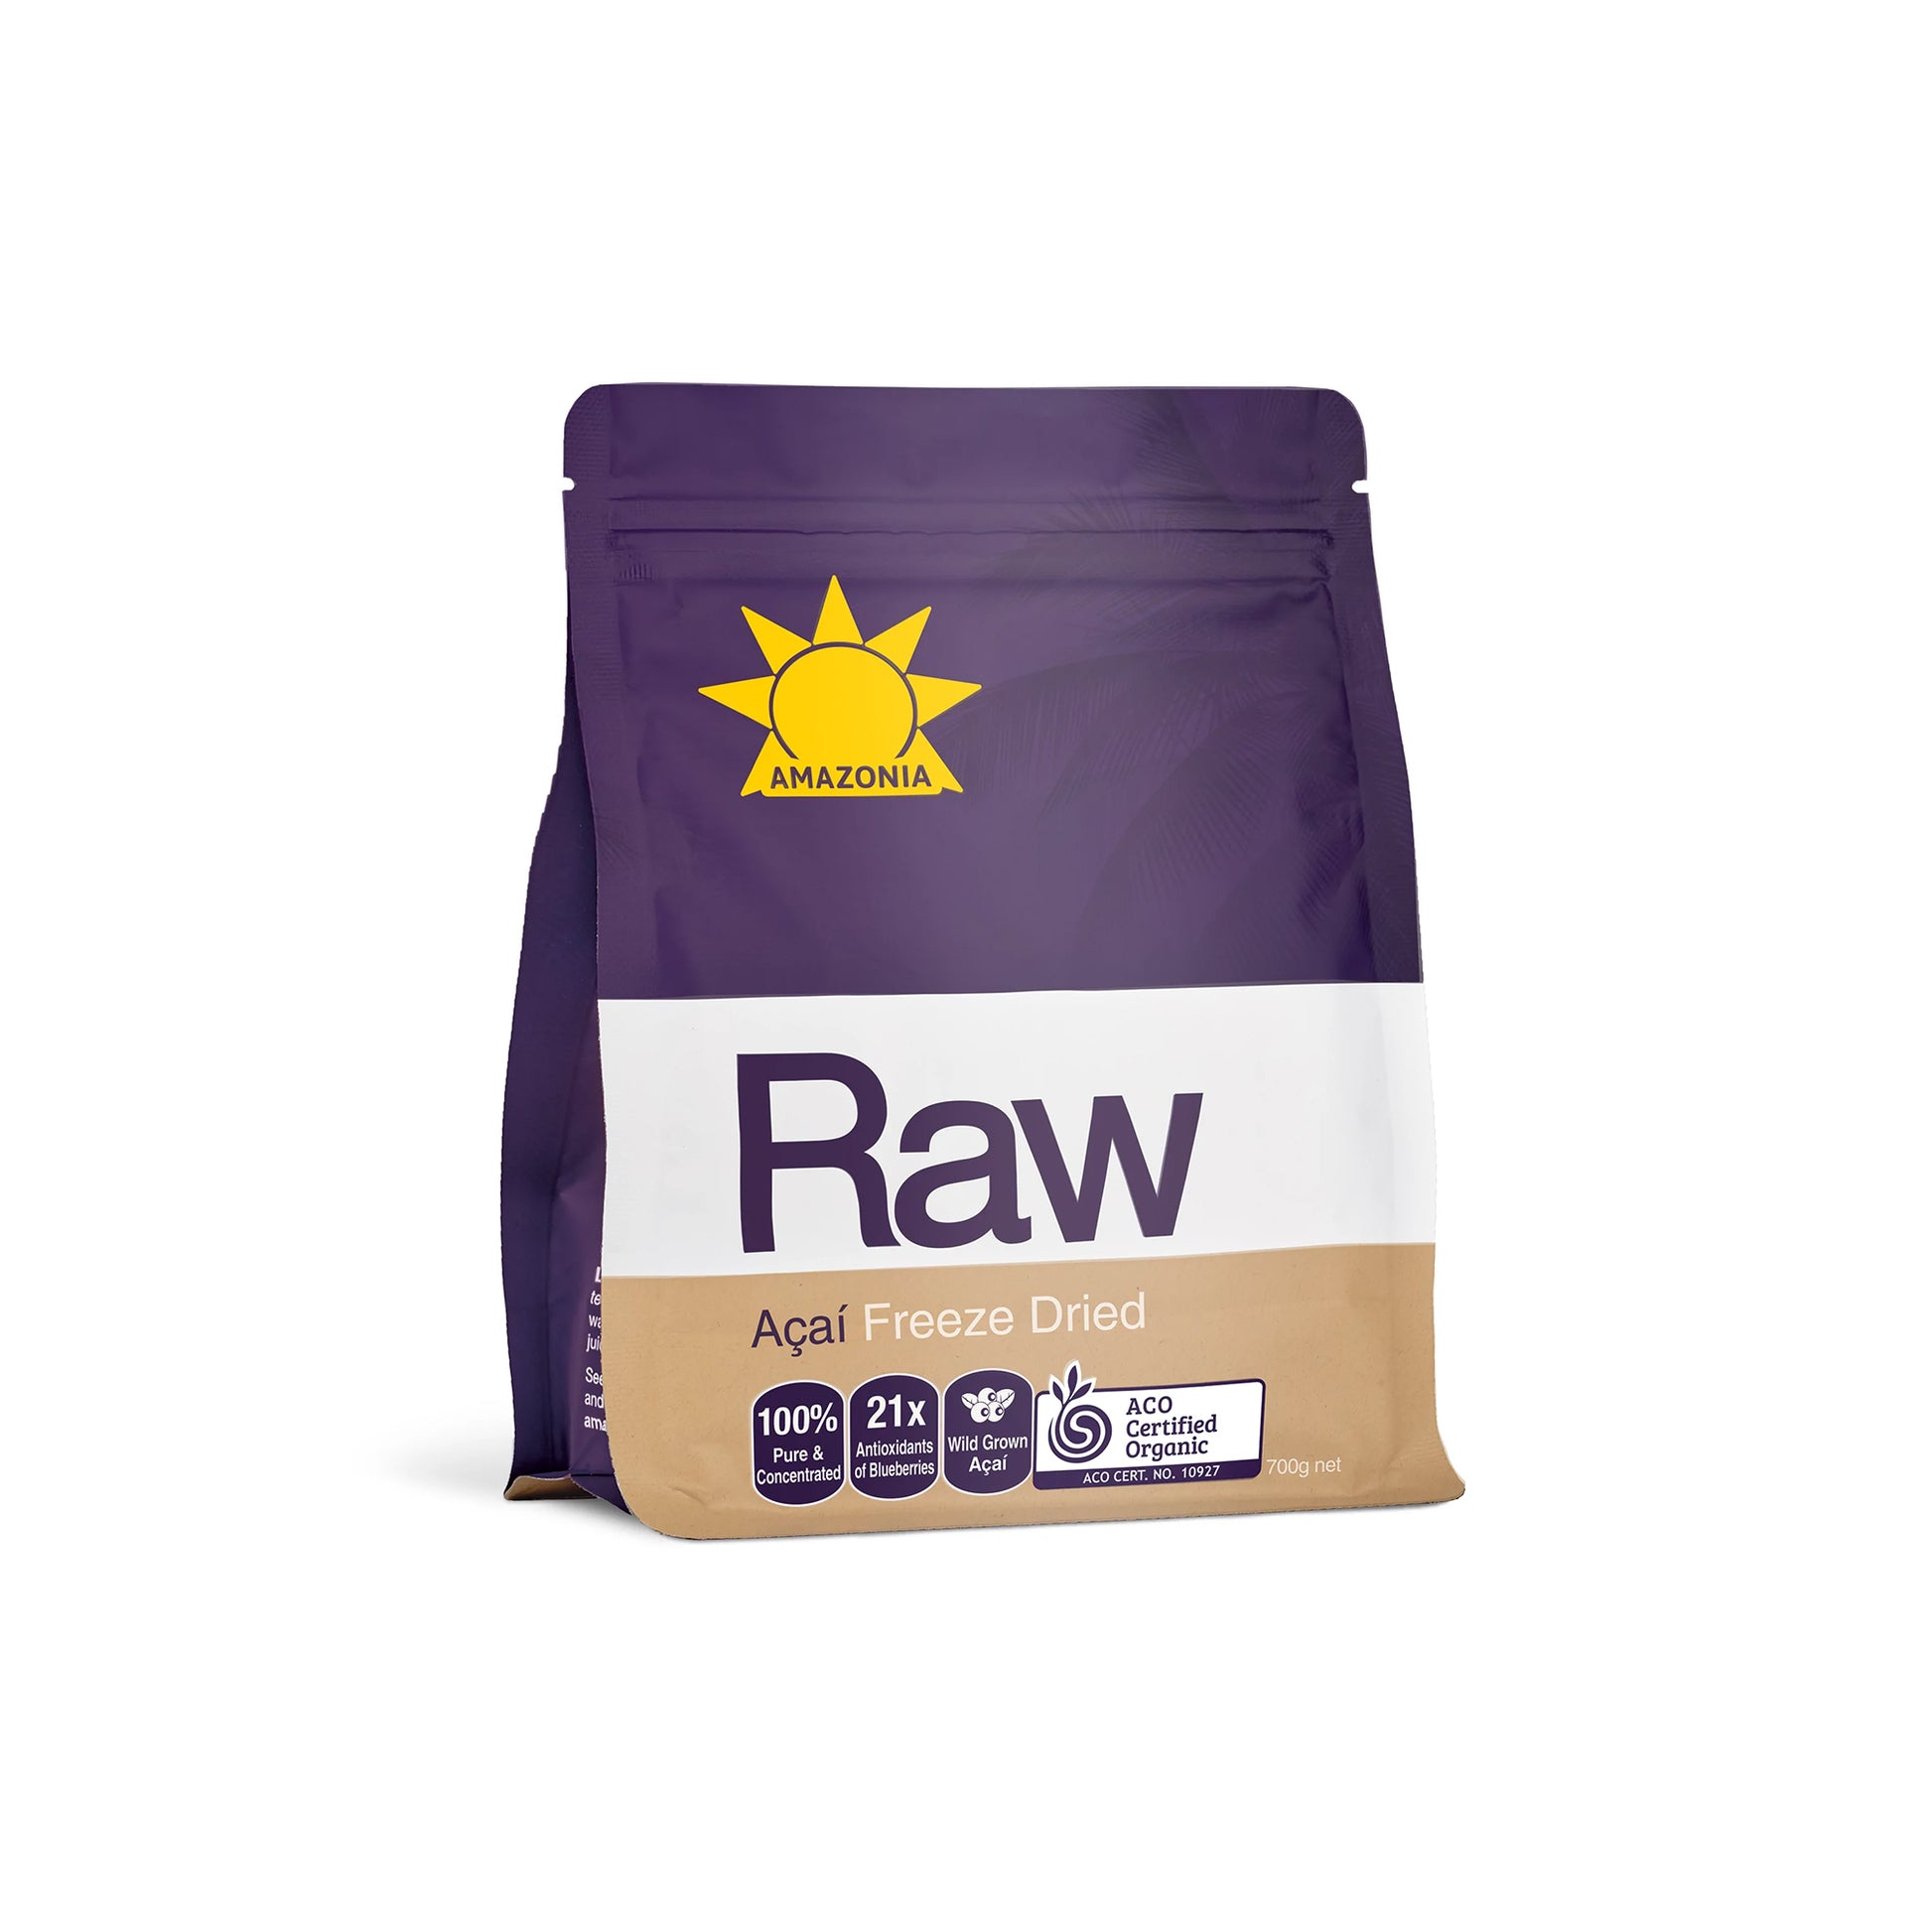 Raw Acai Freeze Dried Powder 700g - Amazonia | MLC Space